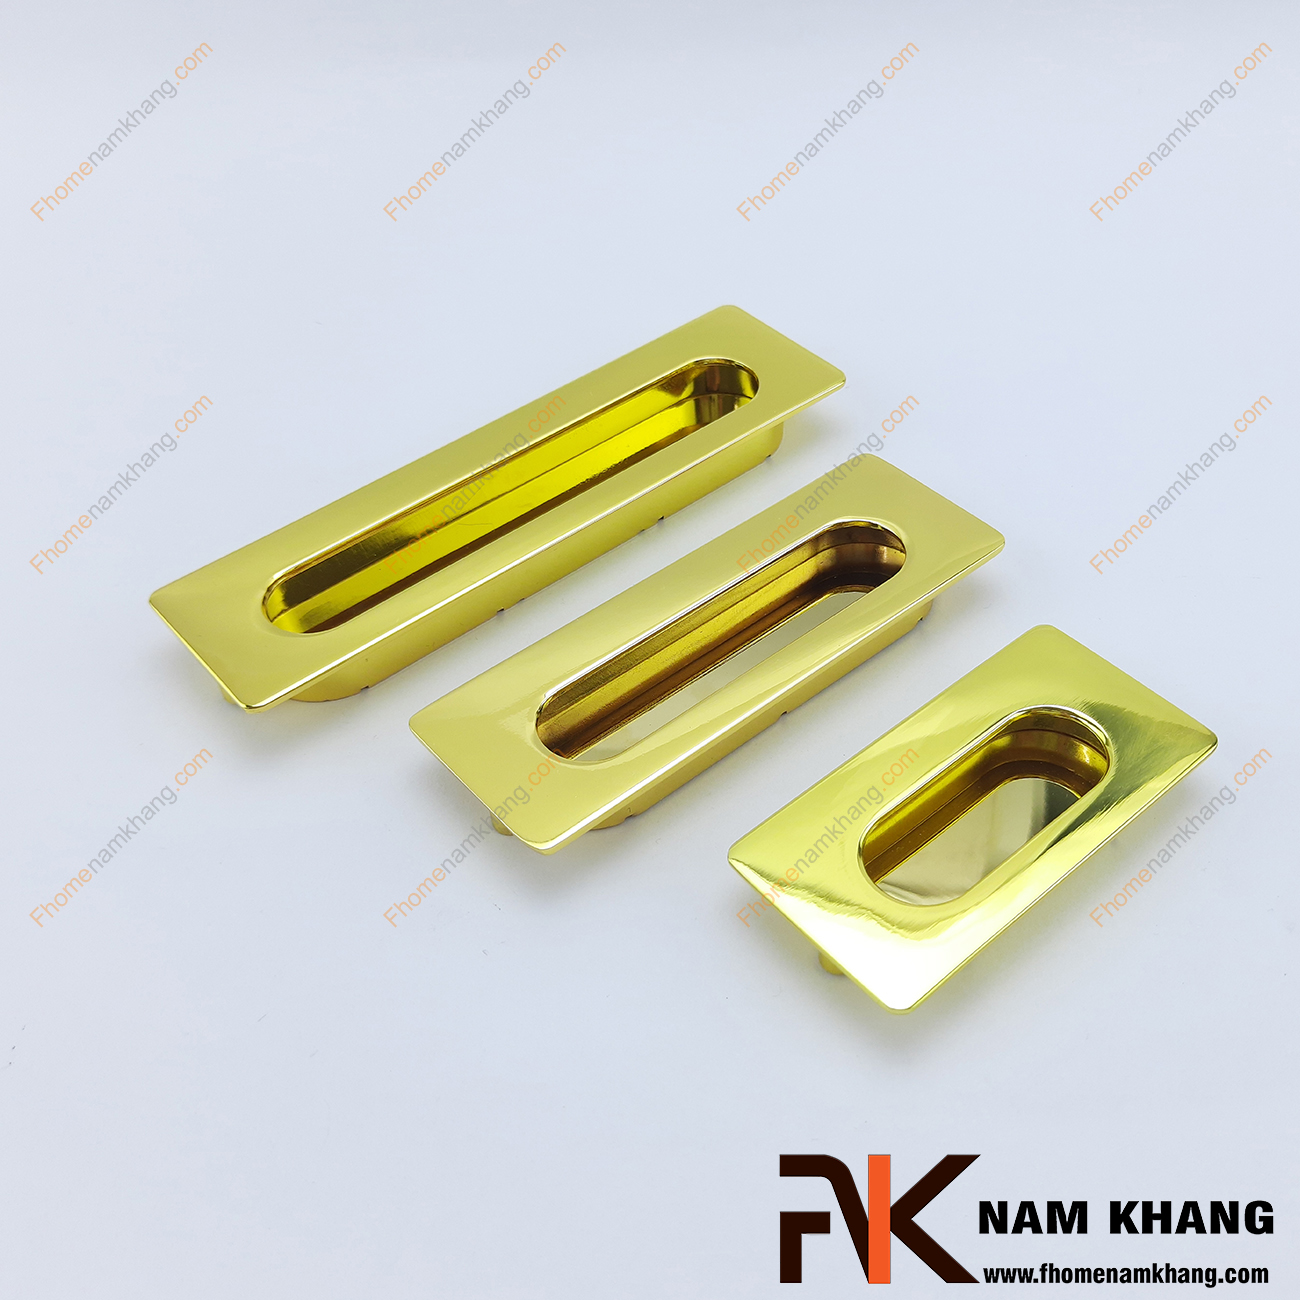 Tay nắm âm tủ dạng trơn màu vàng bóng NK145-V là loại tay nắm chuyên dùng cho các loại tủ đặt ở những nơi có không gian hạn chế hoặc dùng để nâng cao tính thẫm mỹ của sản phẩm.